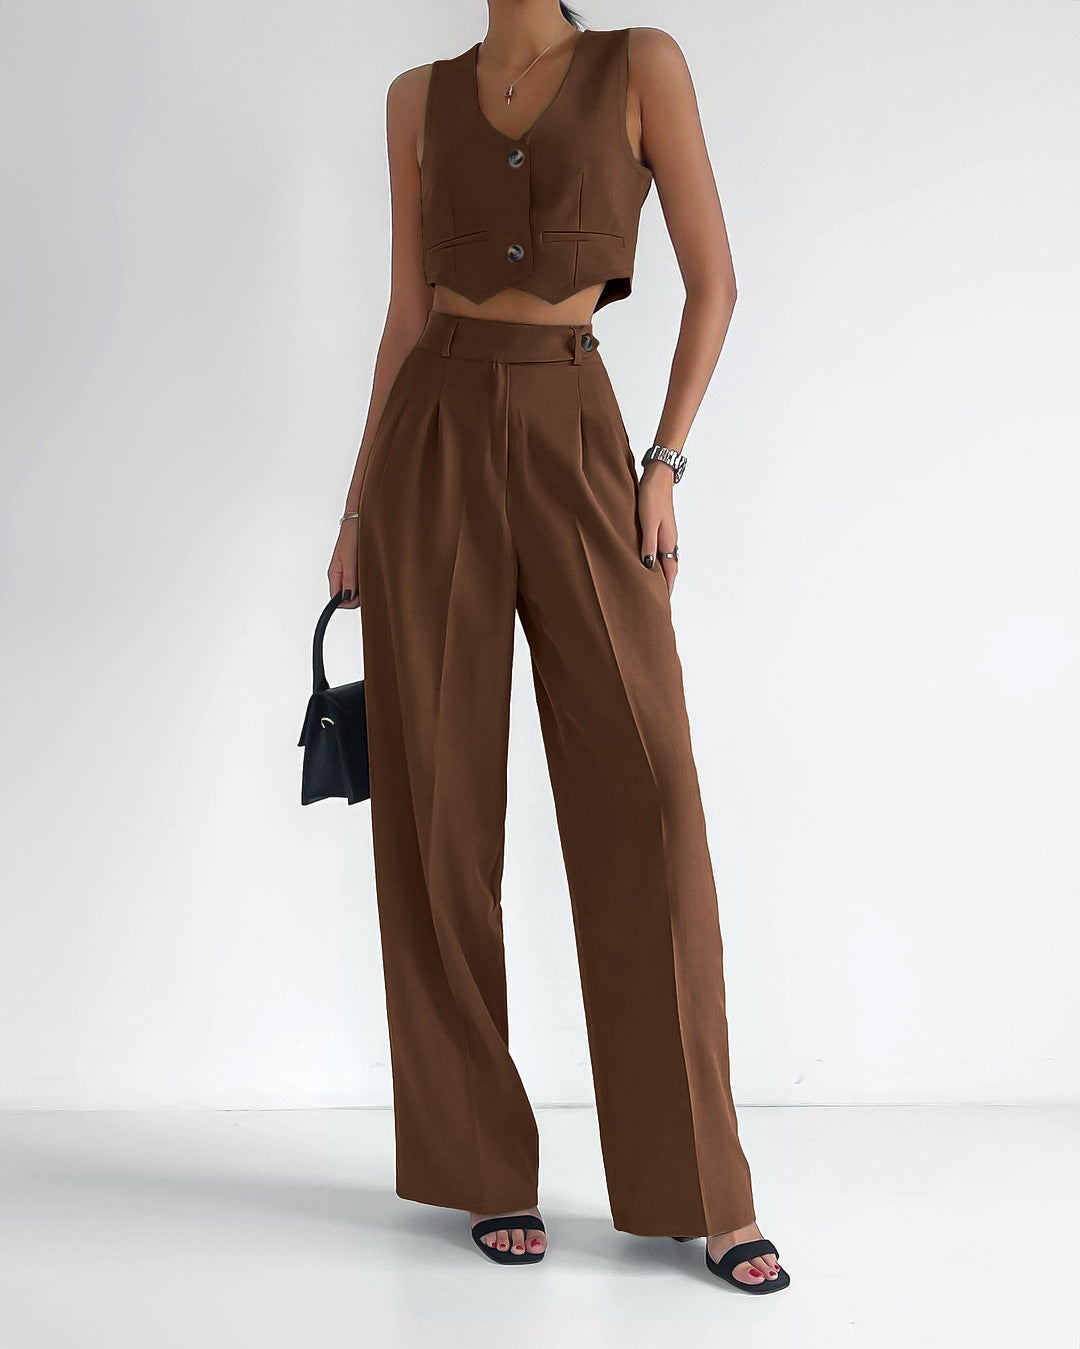 Women's Fashion Casual Temperament Pure Color Slim Fit Suit